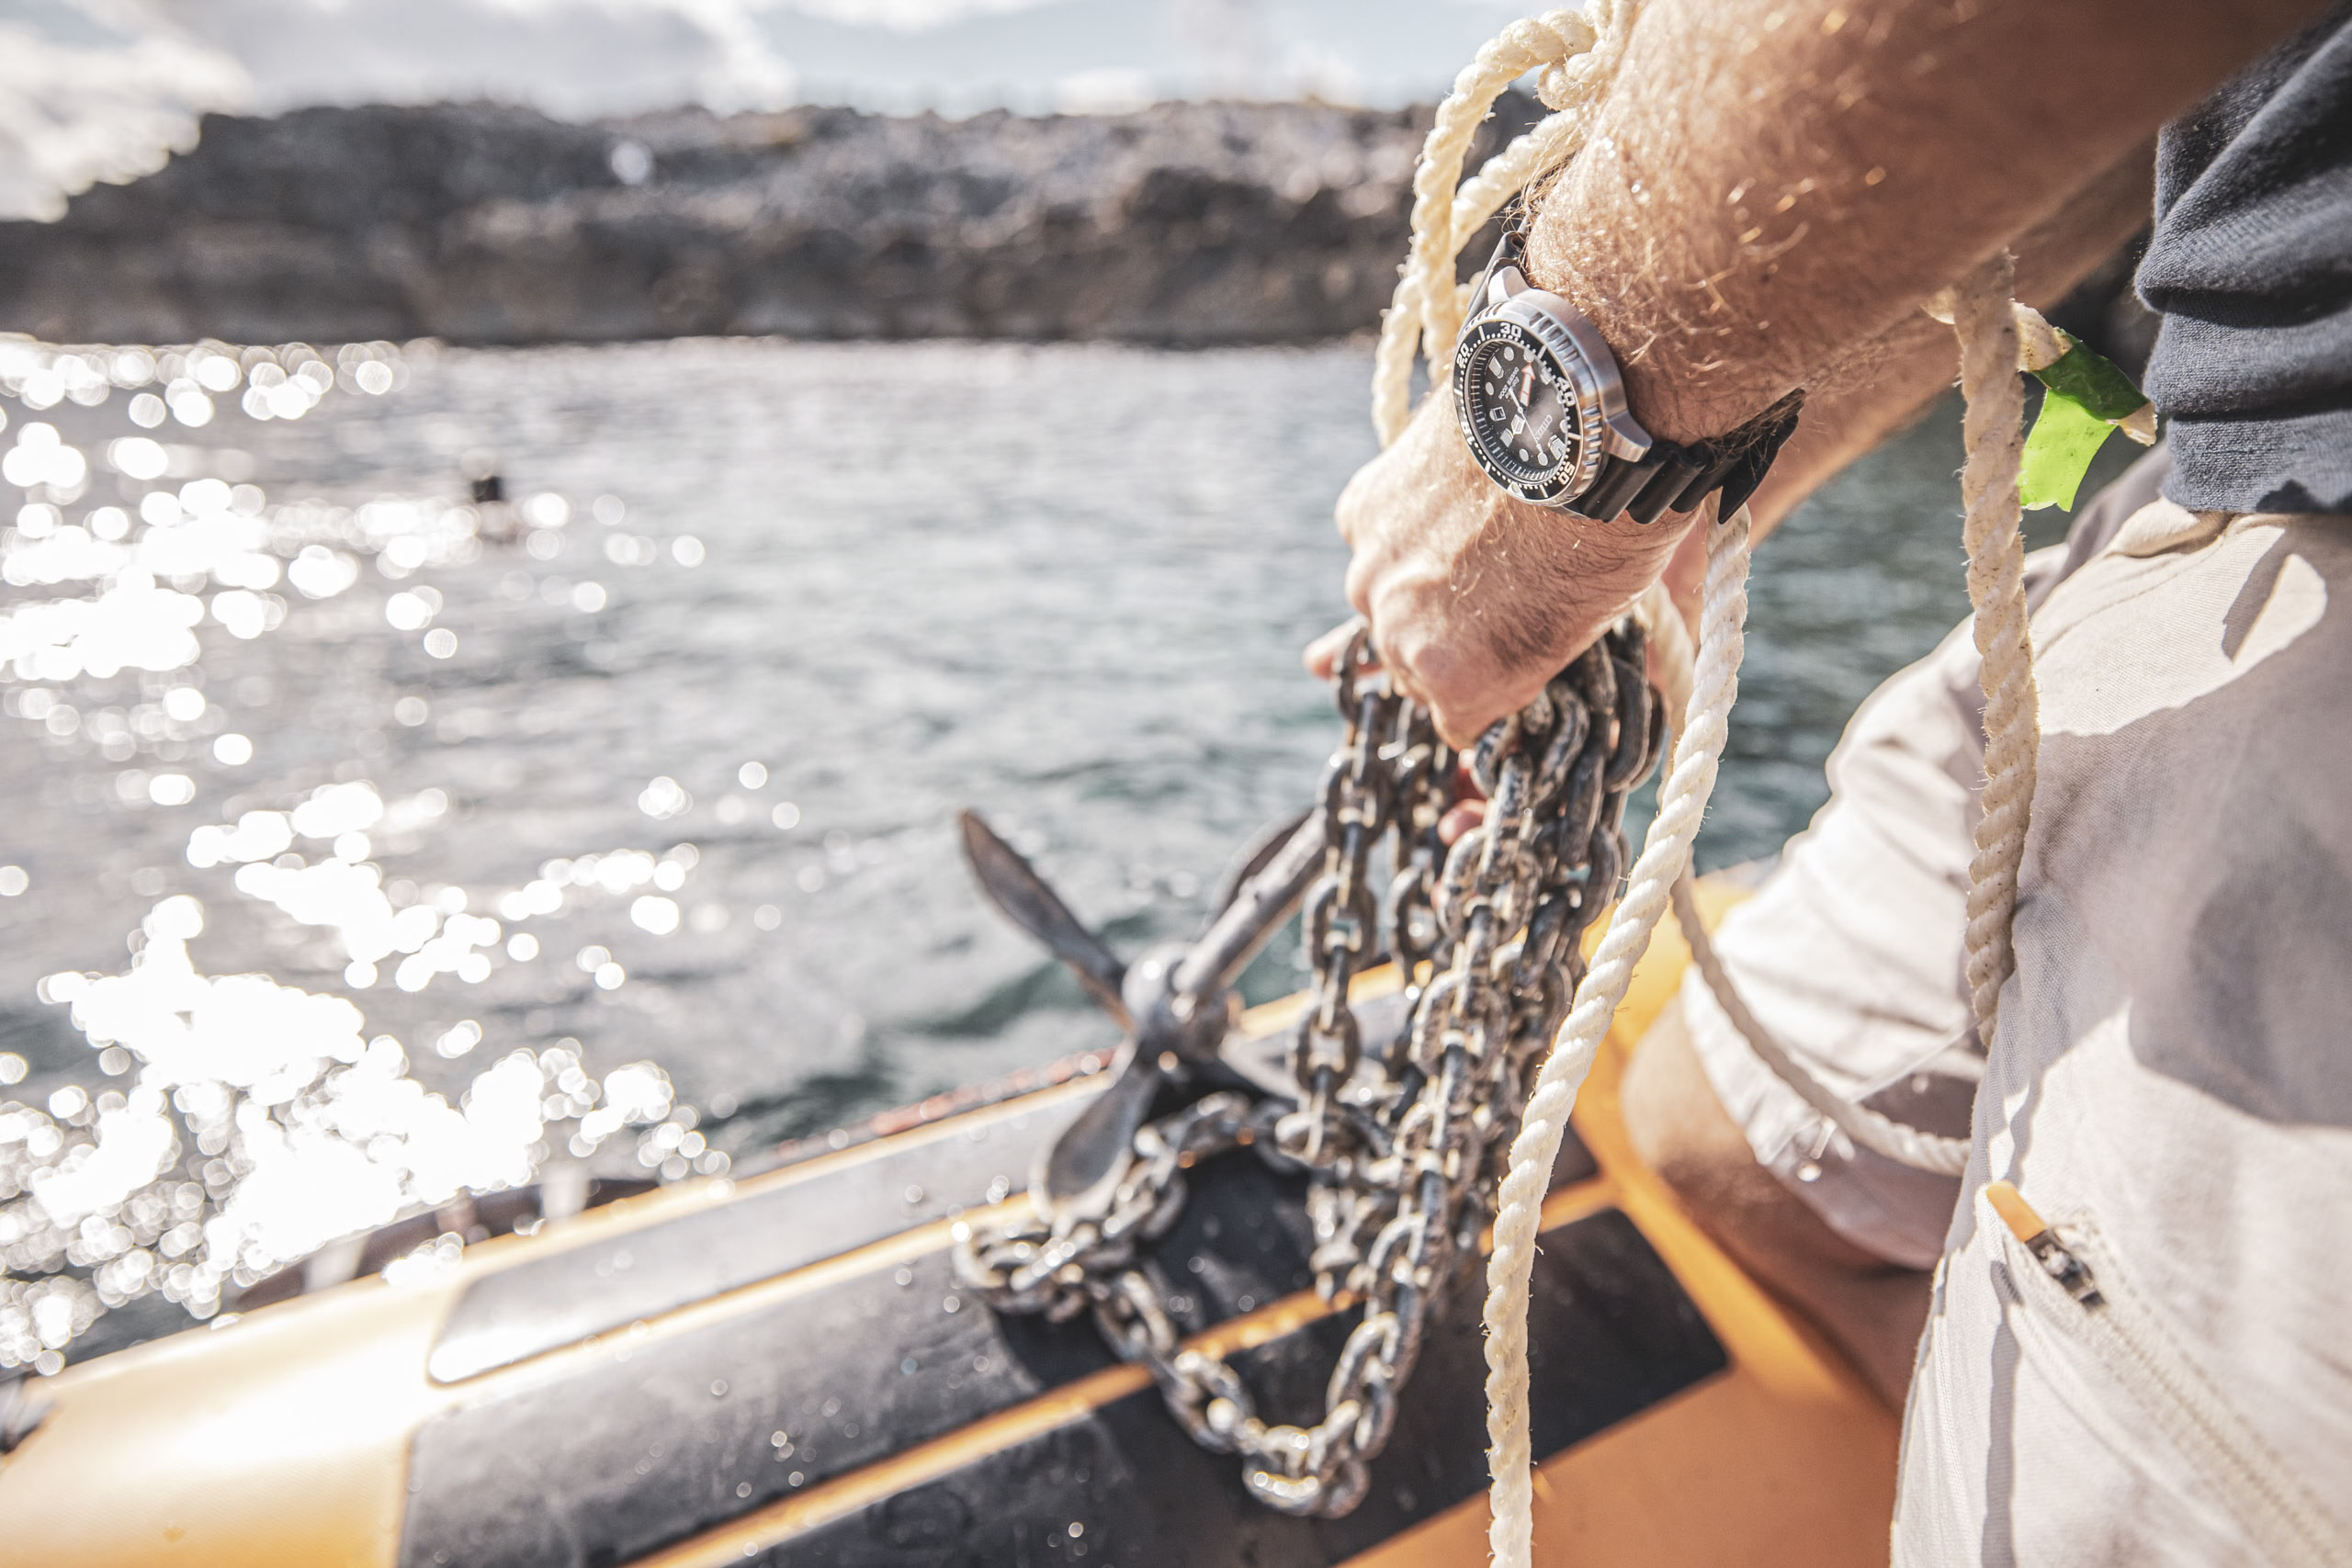 Eine Person mit einer Armbanduhr hält in einem Boot eine Metallkette und ein Seil fest. Im Hintergrund sind sonnenbeschienenes Wasser und eine felsige Küste zu sehen. Der Fokus liegt auf der Uhr und der Kette, was ein Gefühl von Abenteuer vermittelt. © Fotografie Tomas Rodriguez